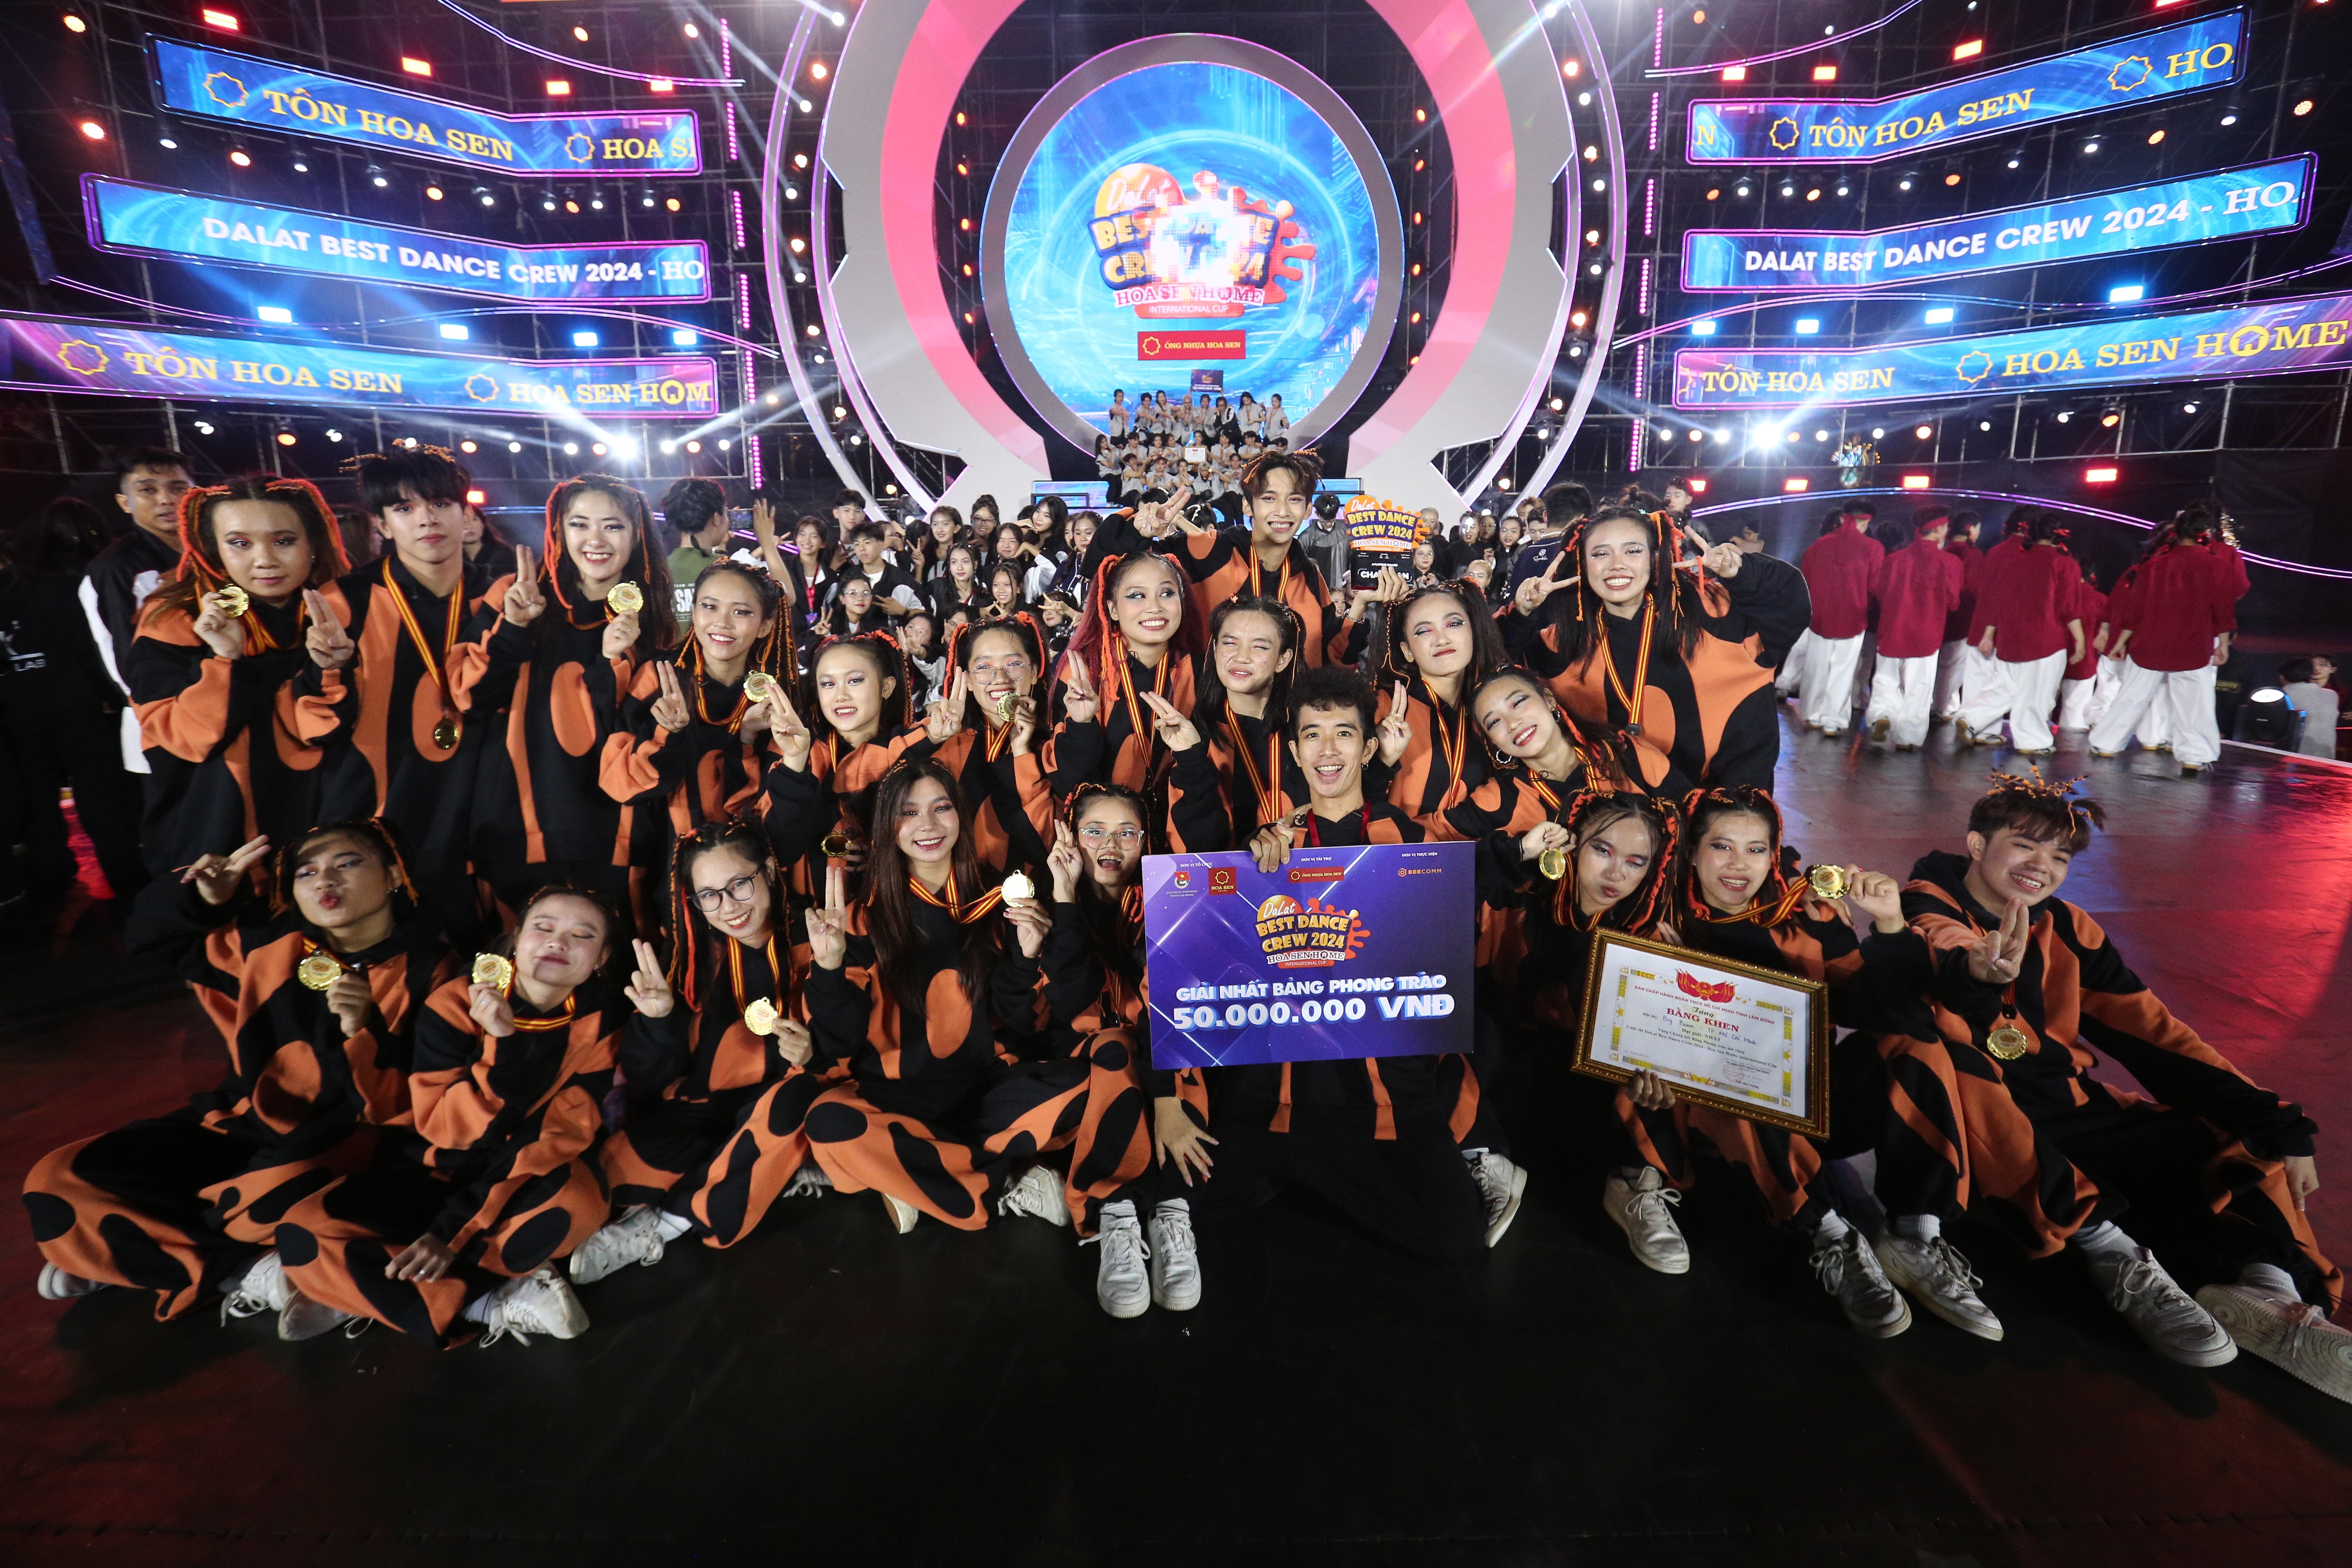 Nhóm nhảy Big Boom Dance Team giành giải quán quân Bảng Phong trào mở rộng Dalat Best Dance Crew 2024